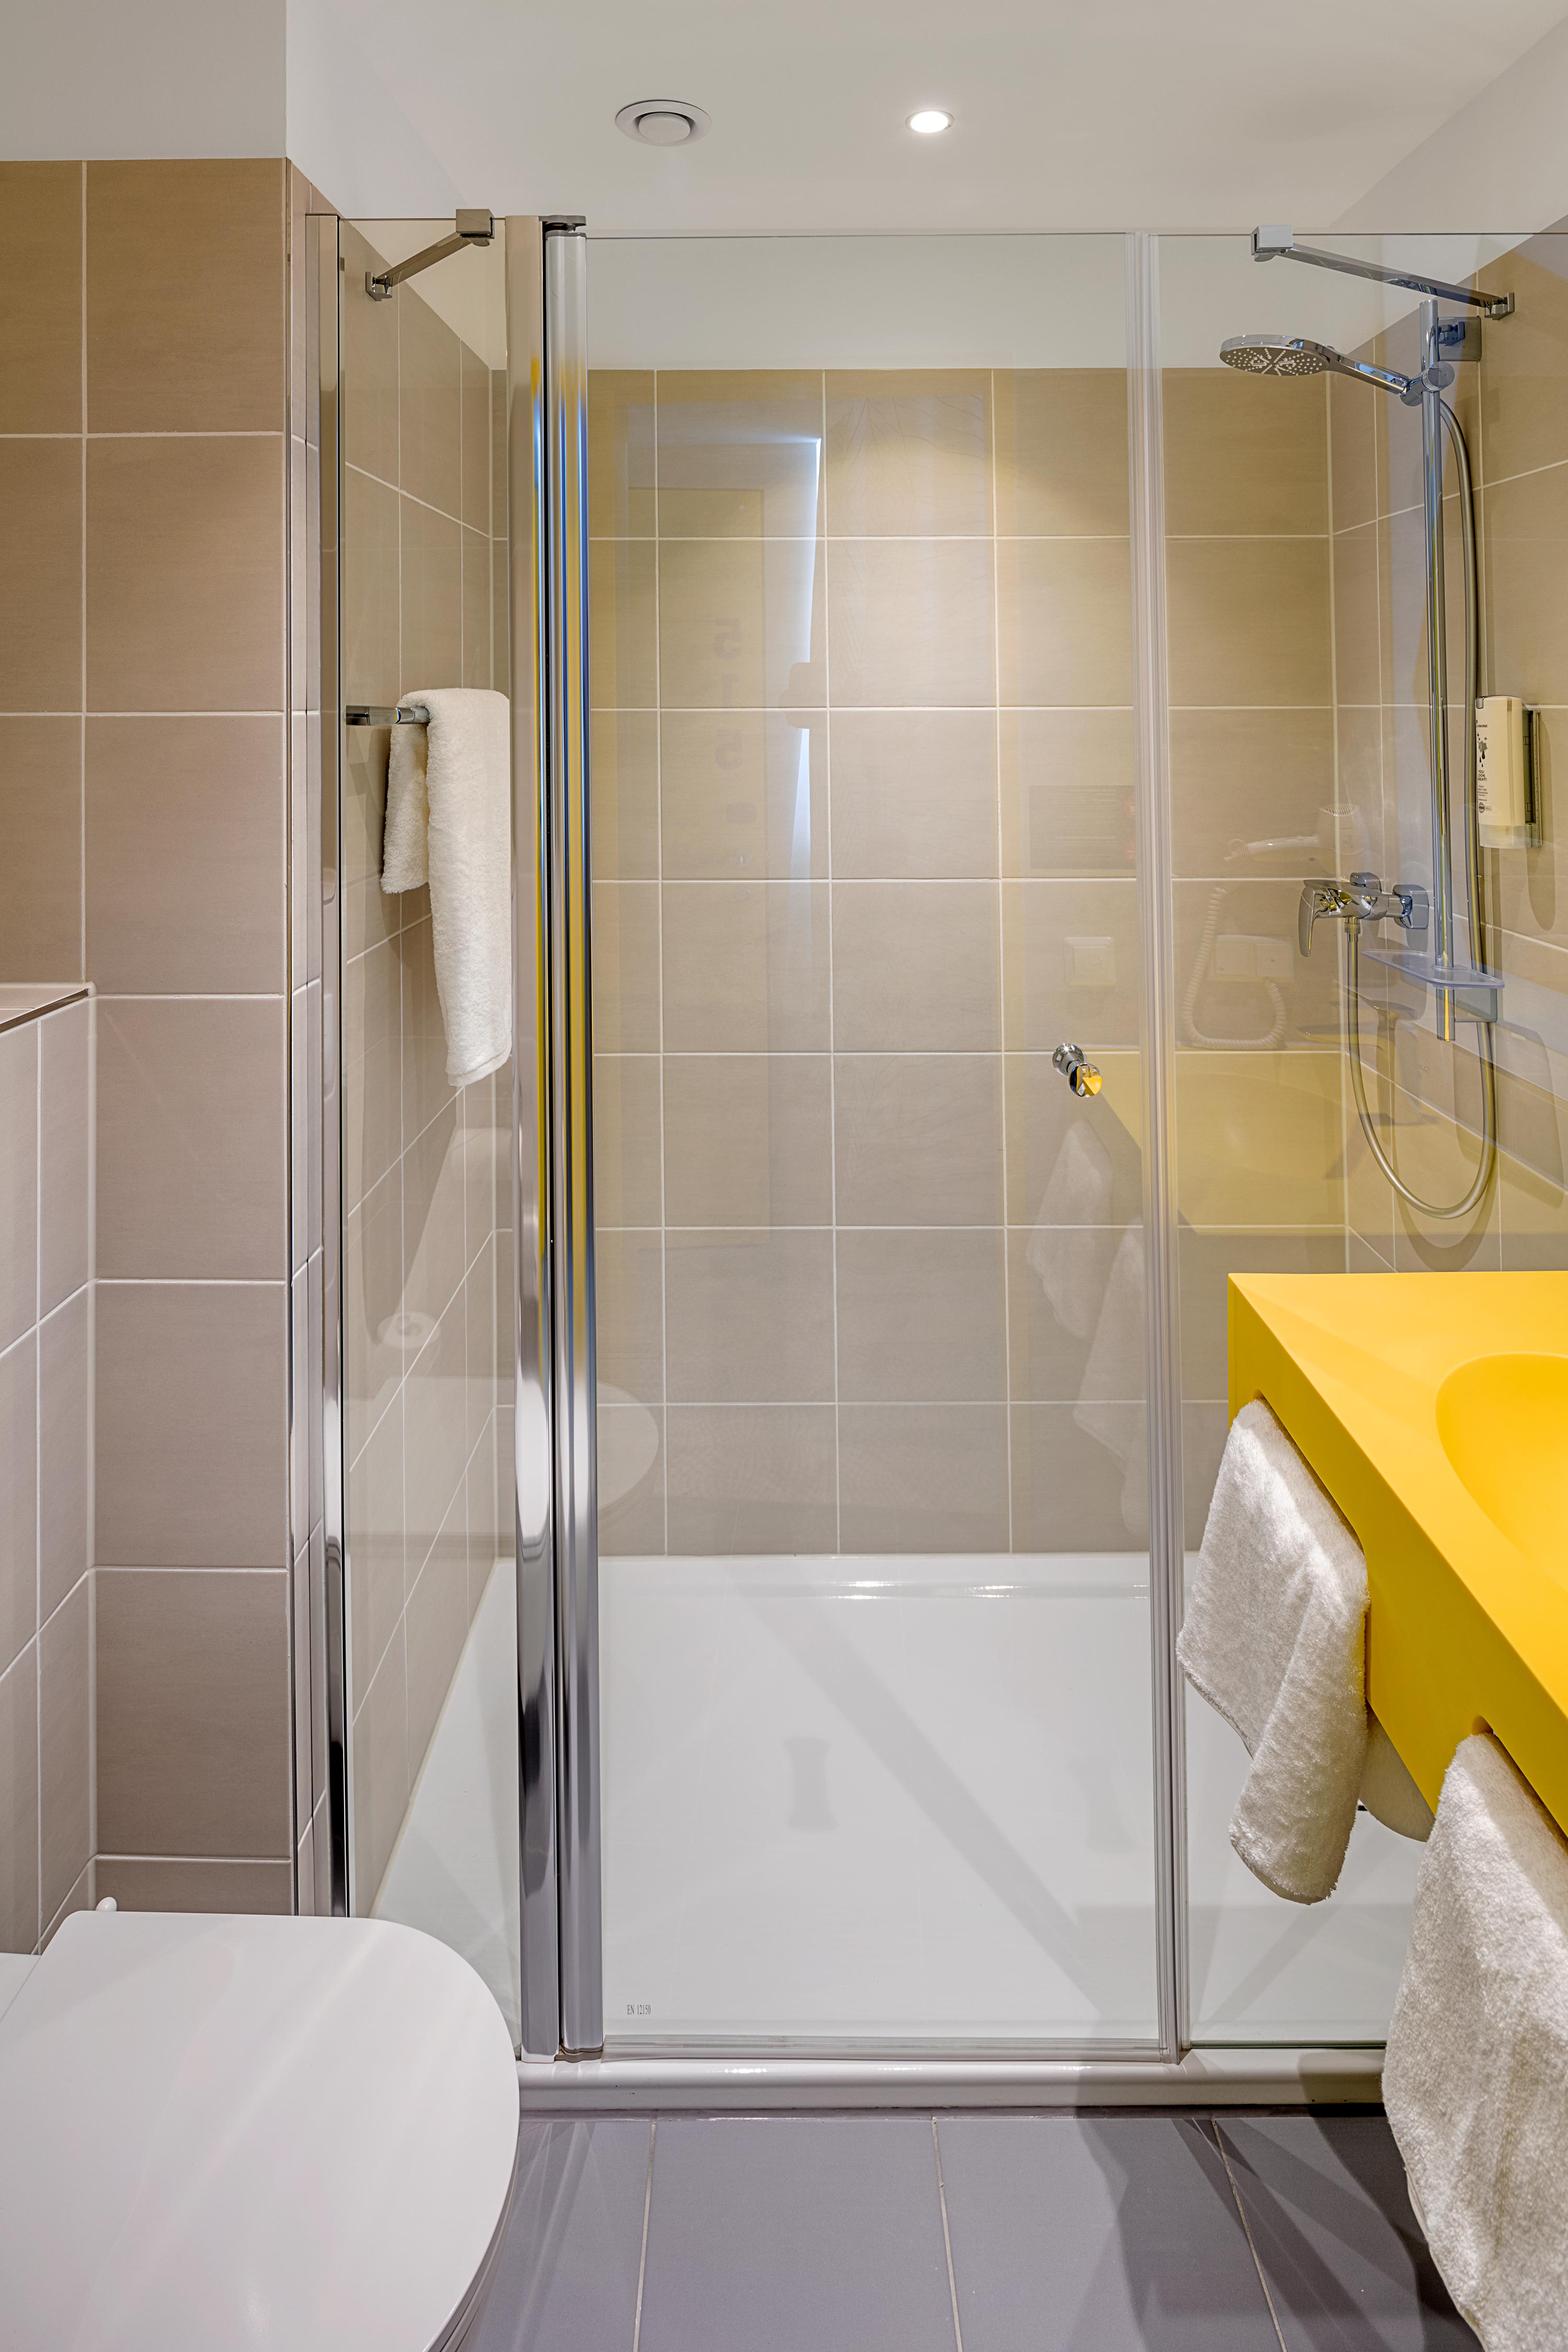 Eine Dusche im Badezimmer des prizeotels, davor ein gelbes Waschbecken